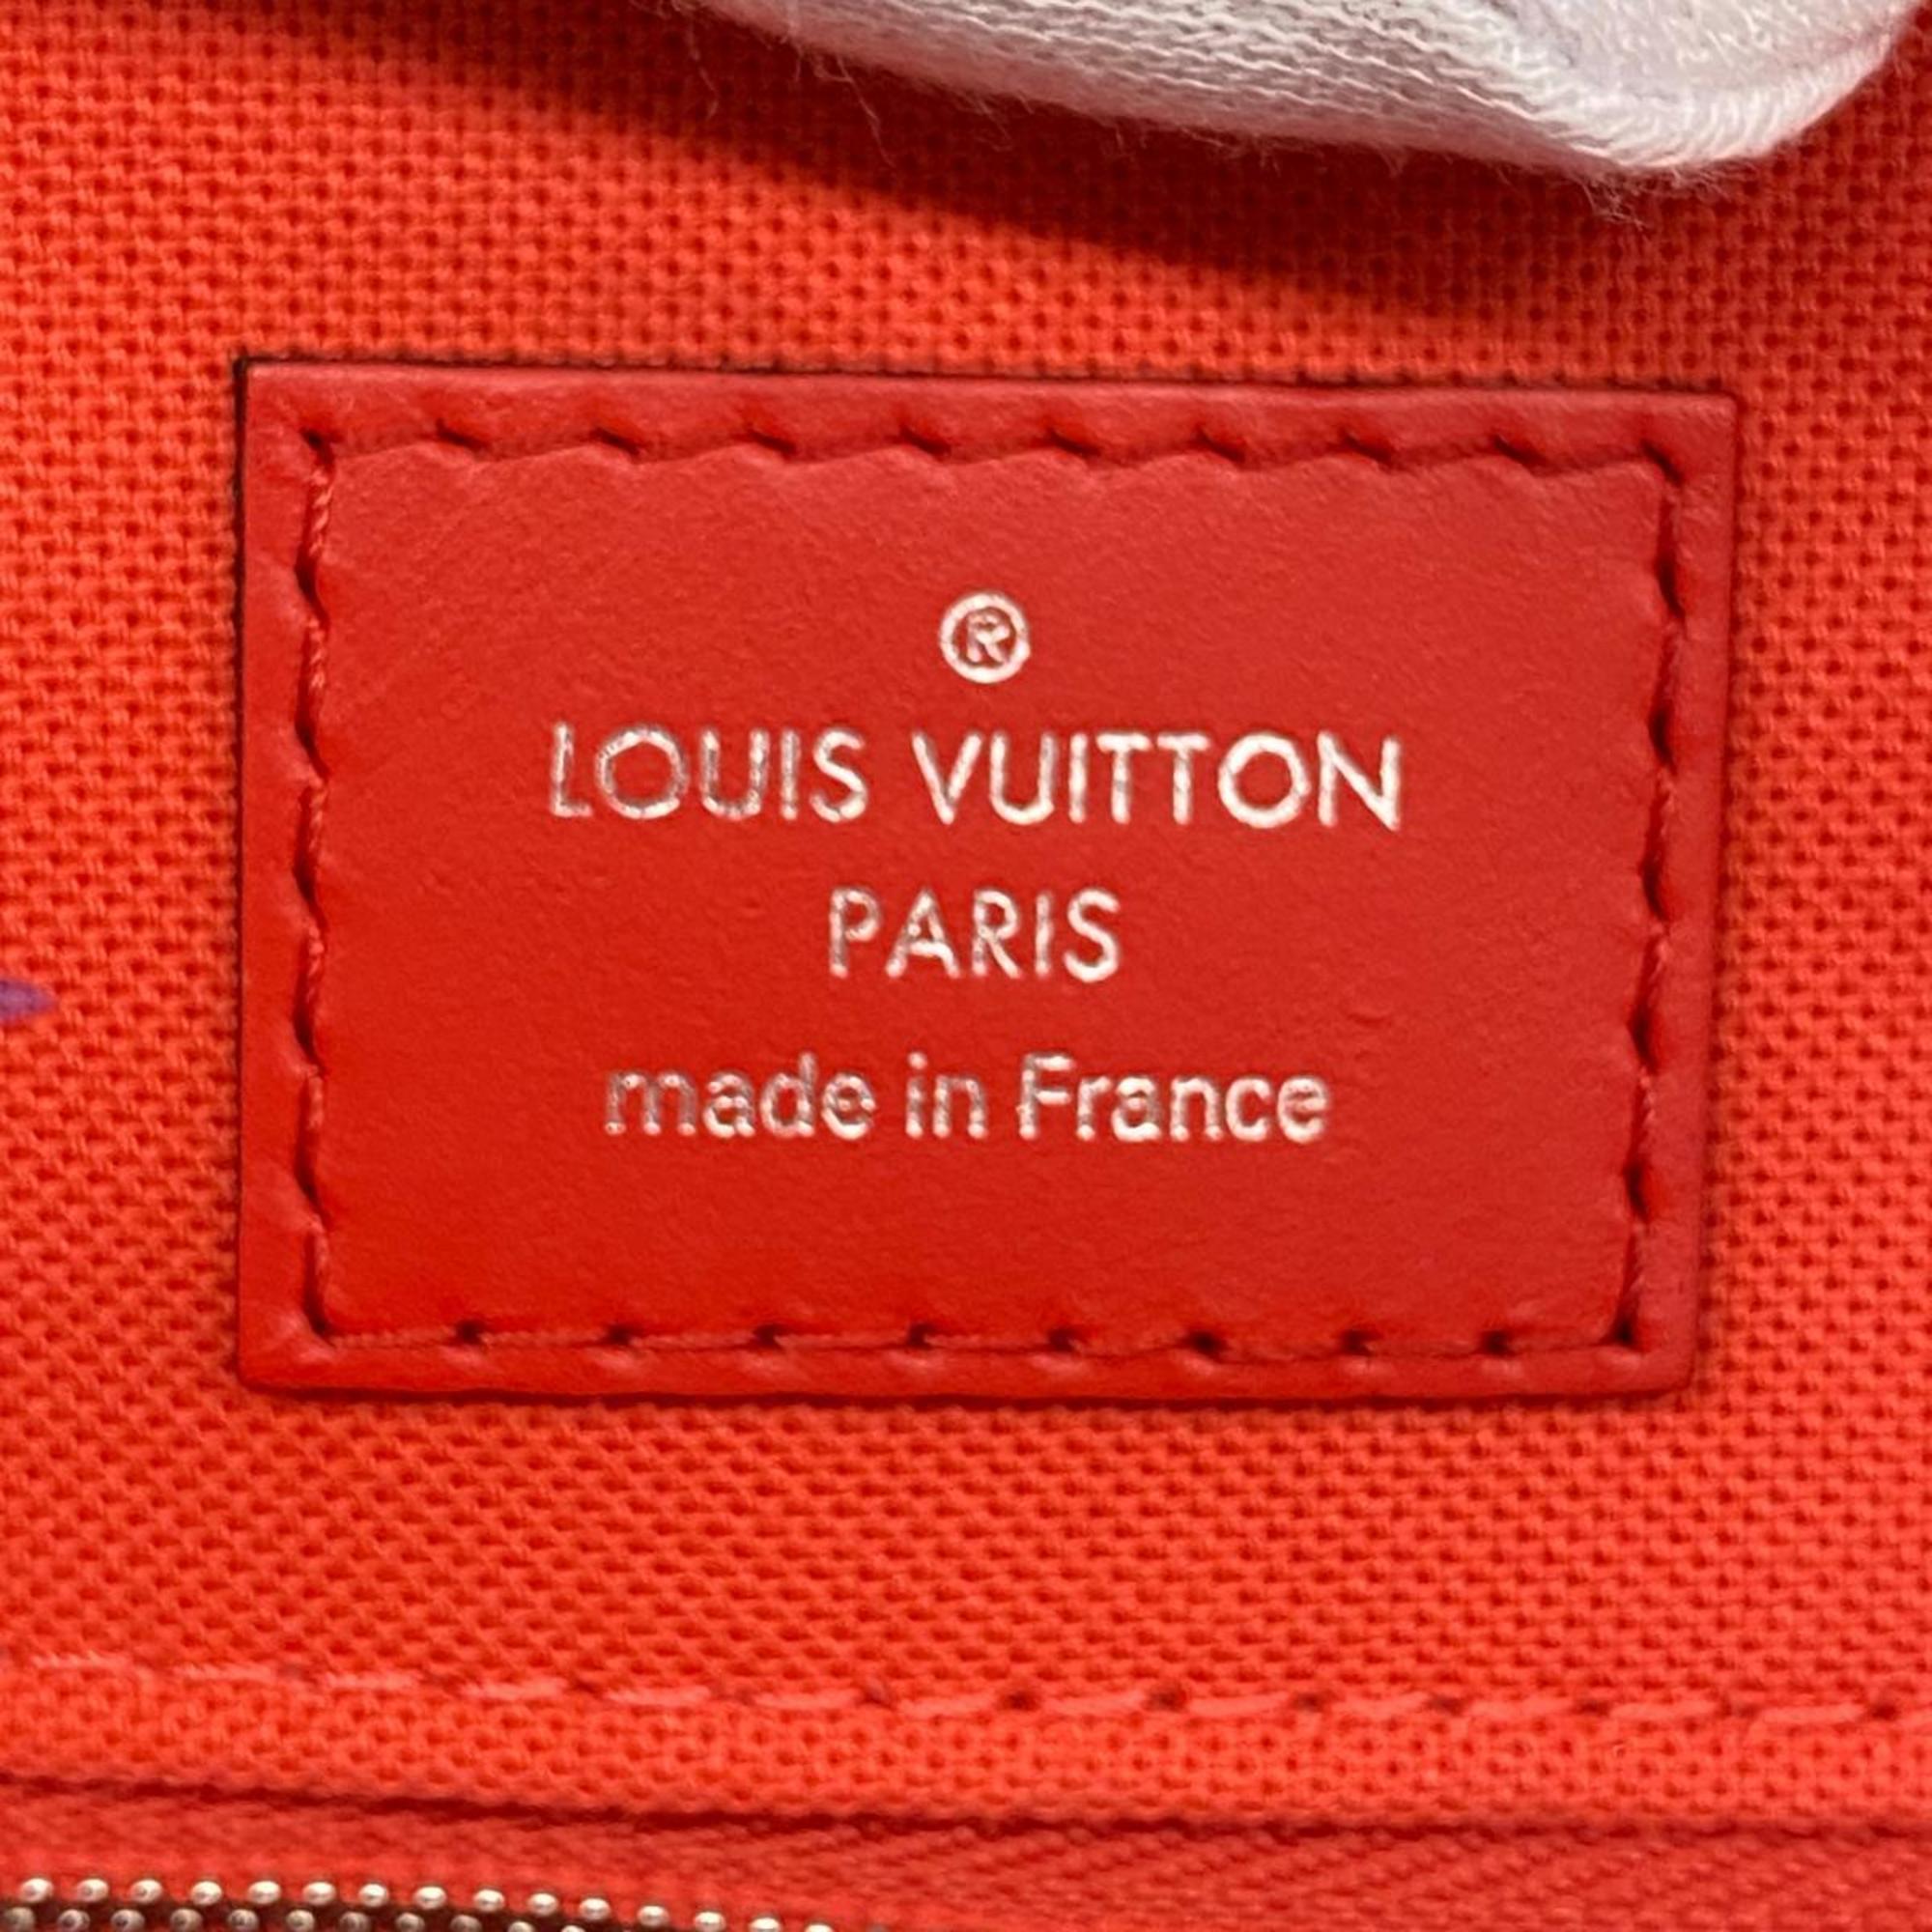 ルイ・ヴィトン(Louis Vuitton) ルイ・ヴィトン ハンドバッグ モノグラムジャイアントエスカル オンザゴーGM  M45121 レッド ピンクレディース